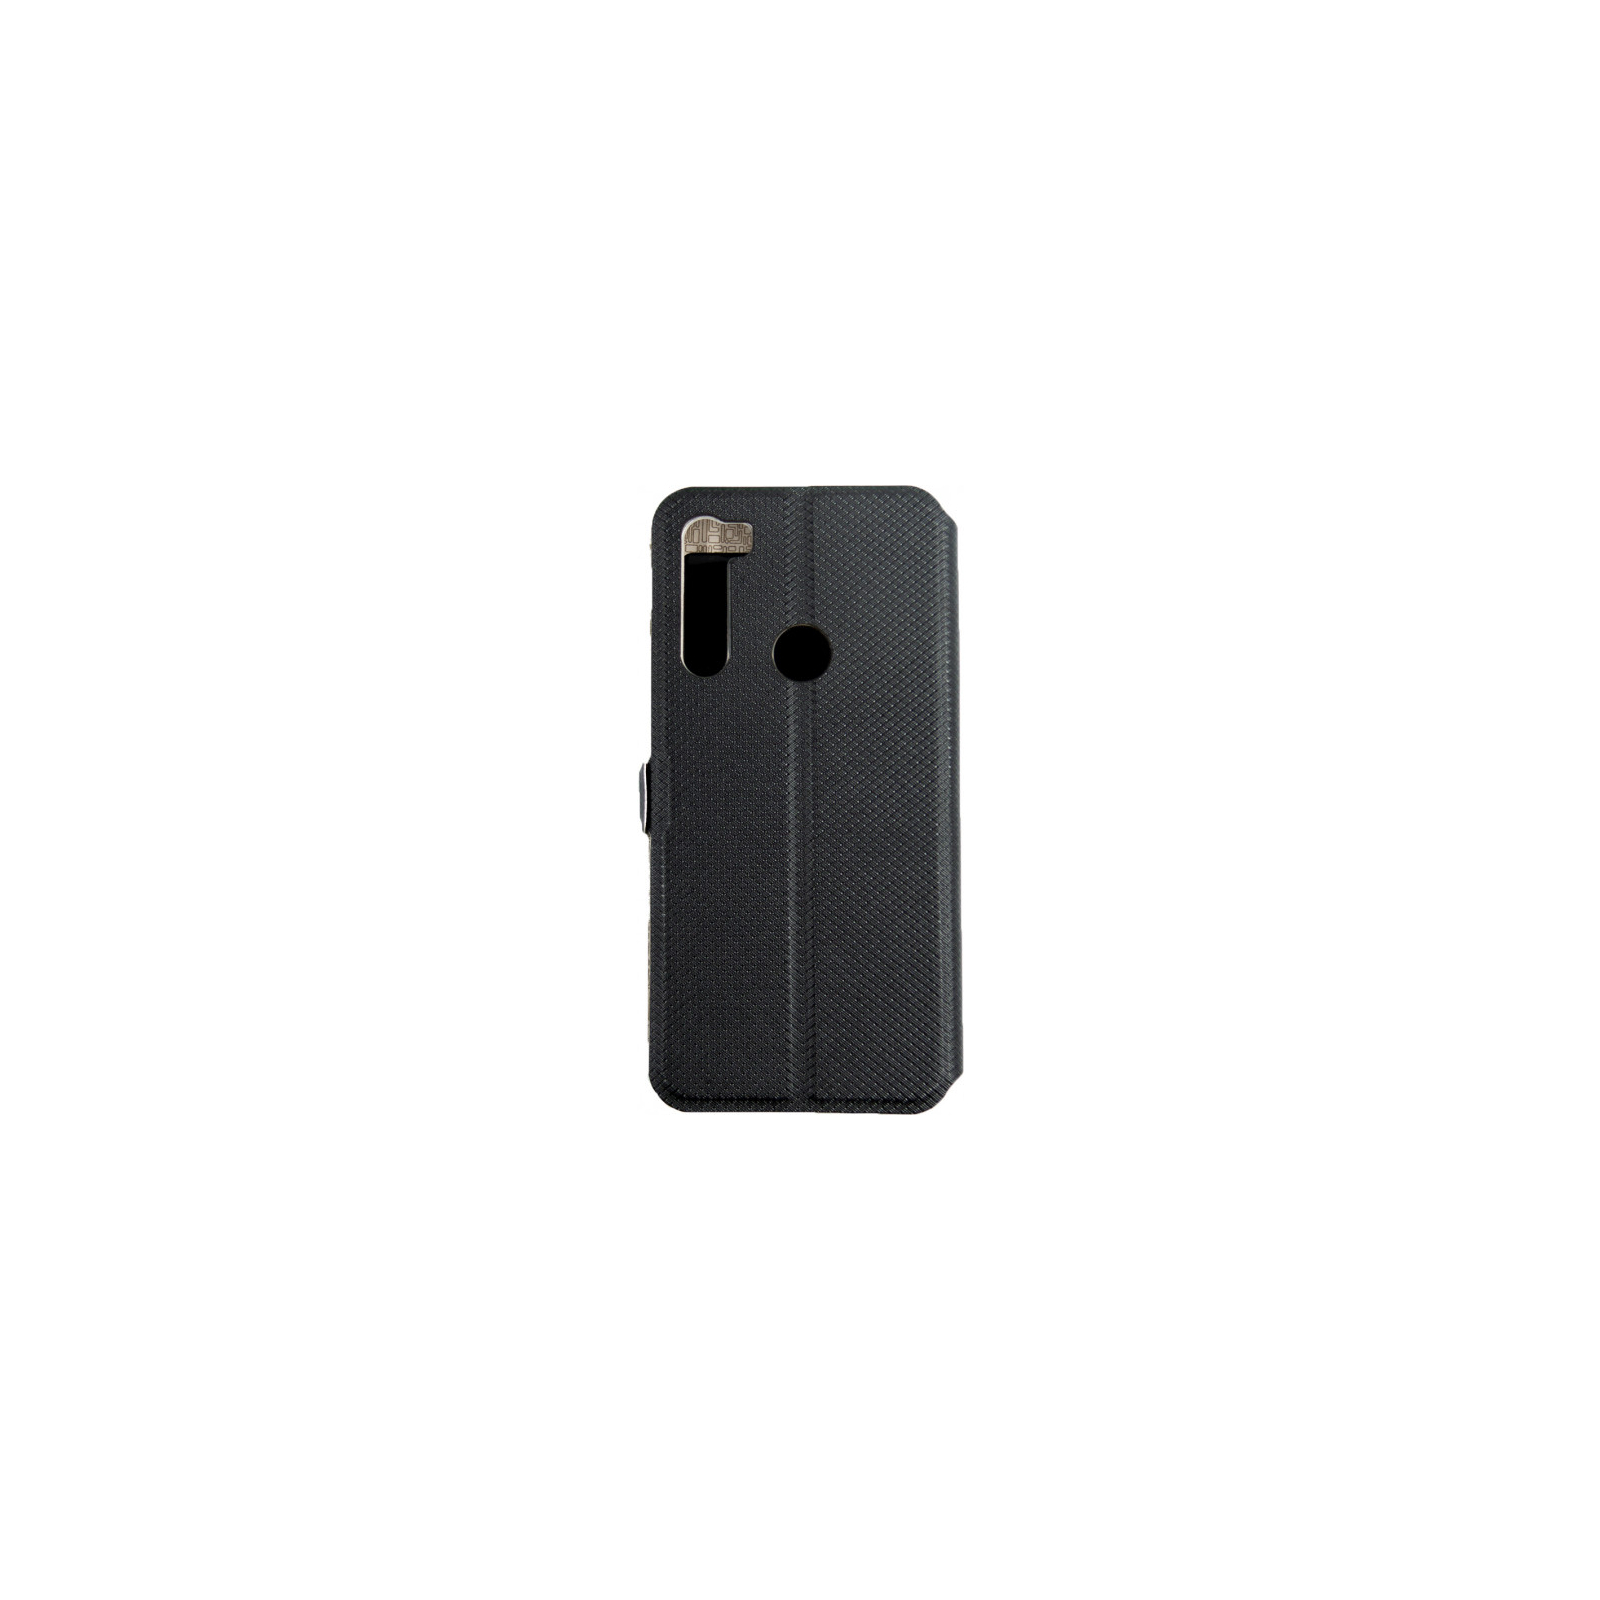 Чехол для мобильного телефона Dengos Flipp-Book Call ID Xiaomi Redmi Note 8, black (DG-SL-BK-250) (DG-SL-BK-250) изображение 2